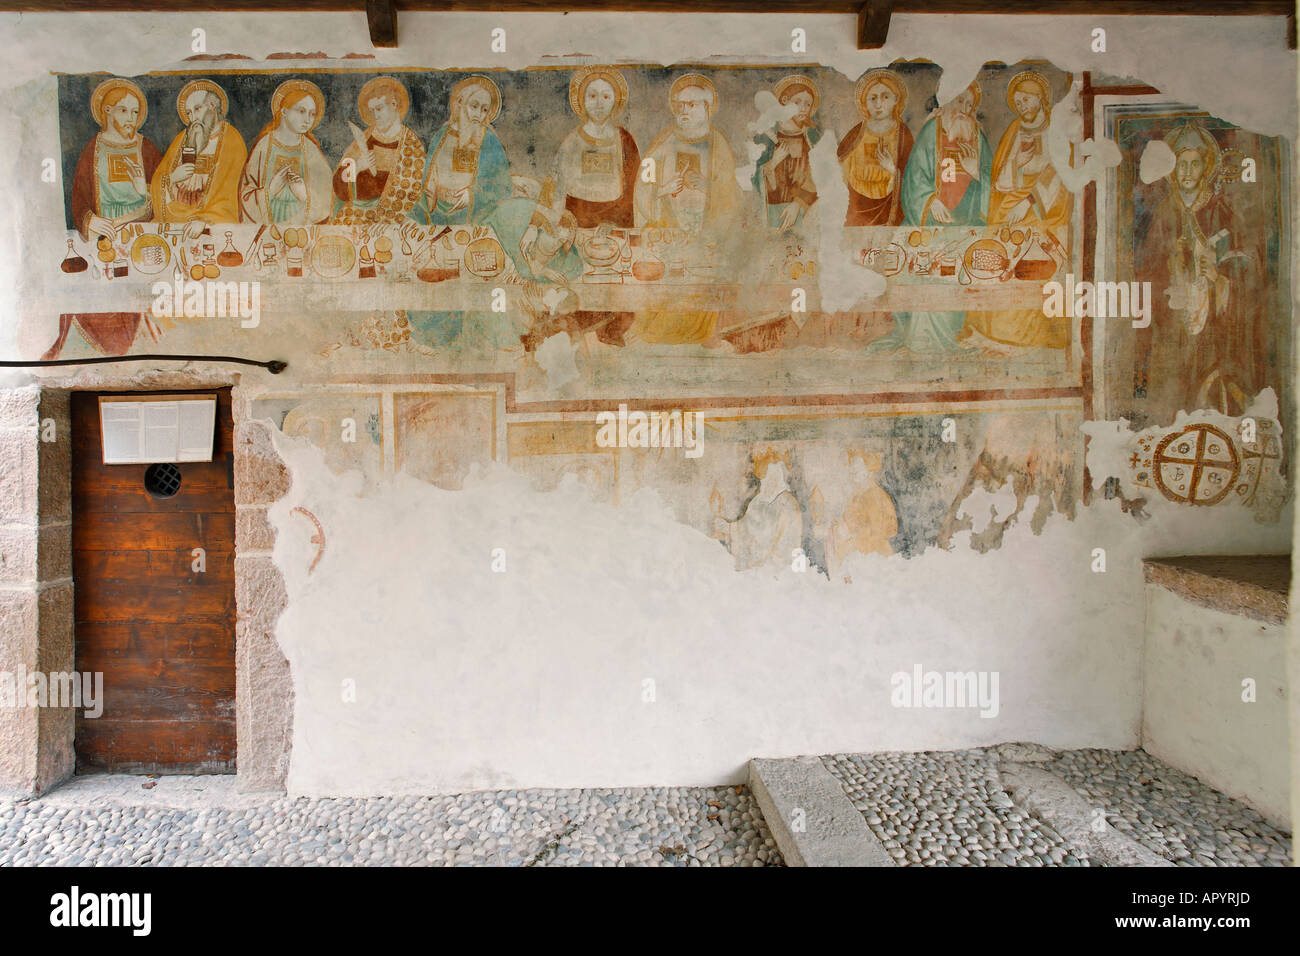 Affreschi datato il 13.secolo nella piccola chiesa di s.apollinare, città di Arco, vicino al lago di garda, Italia Foto Stock